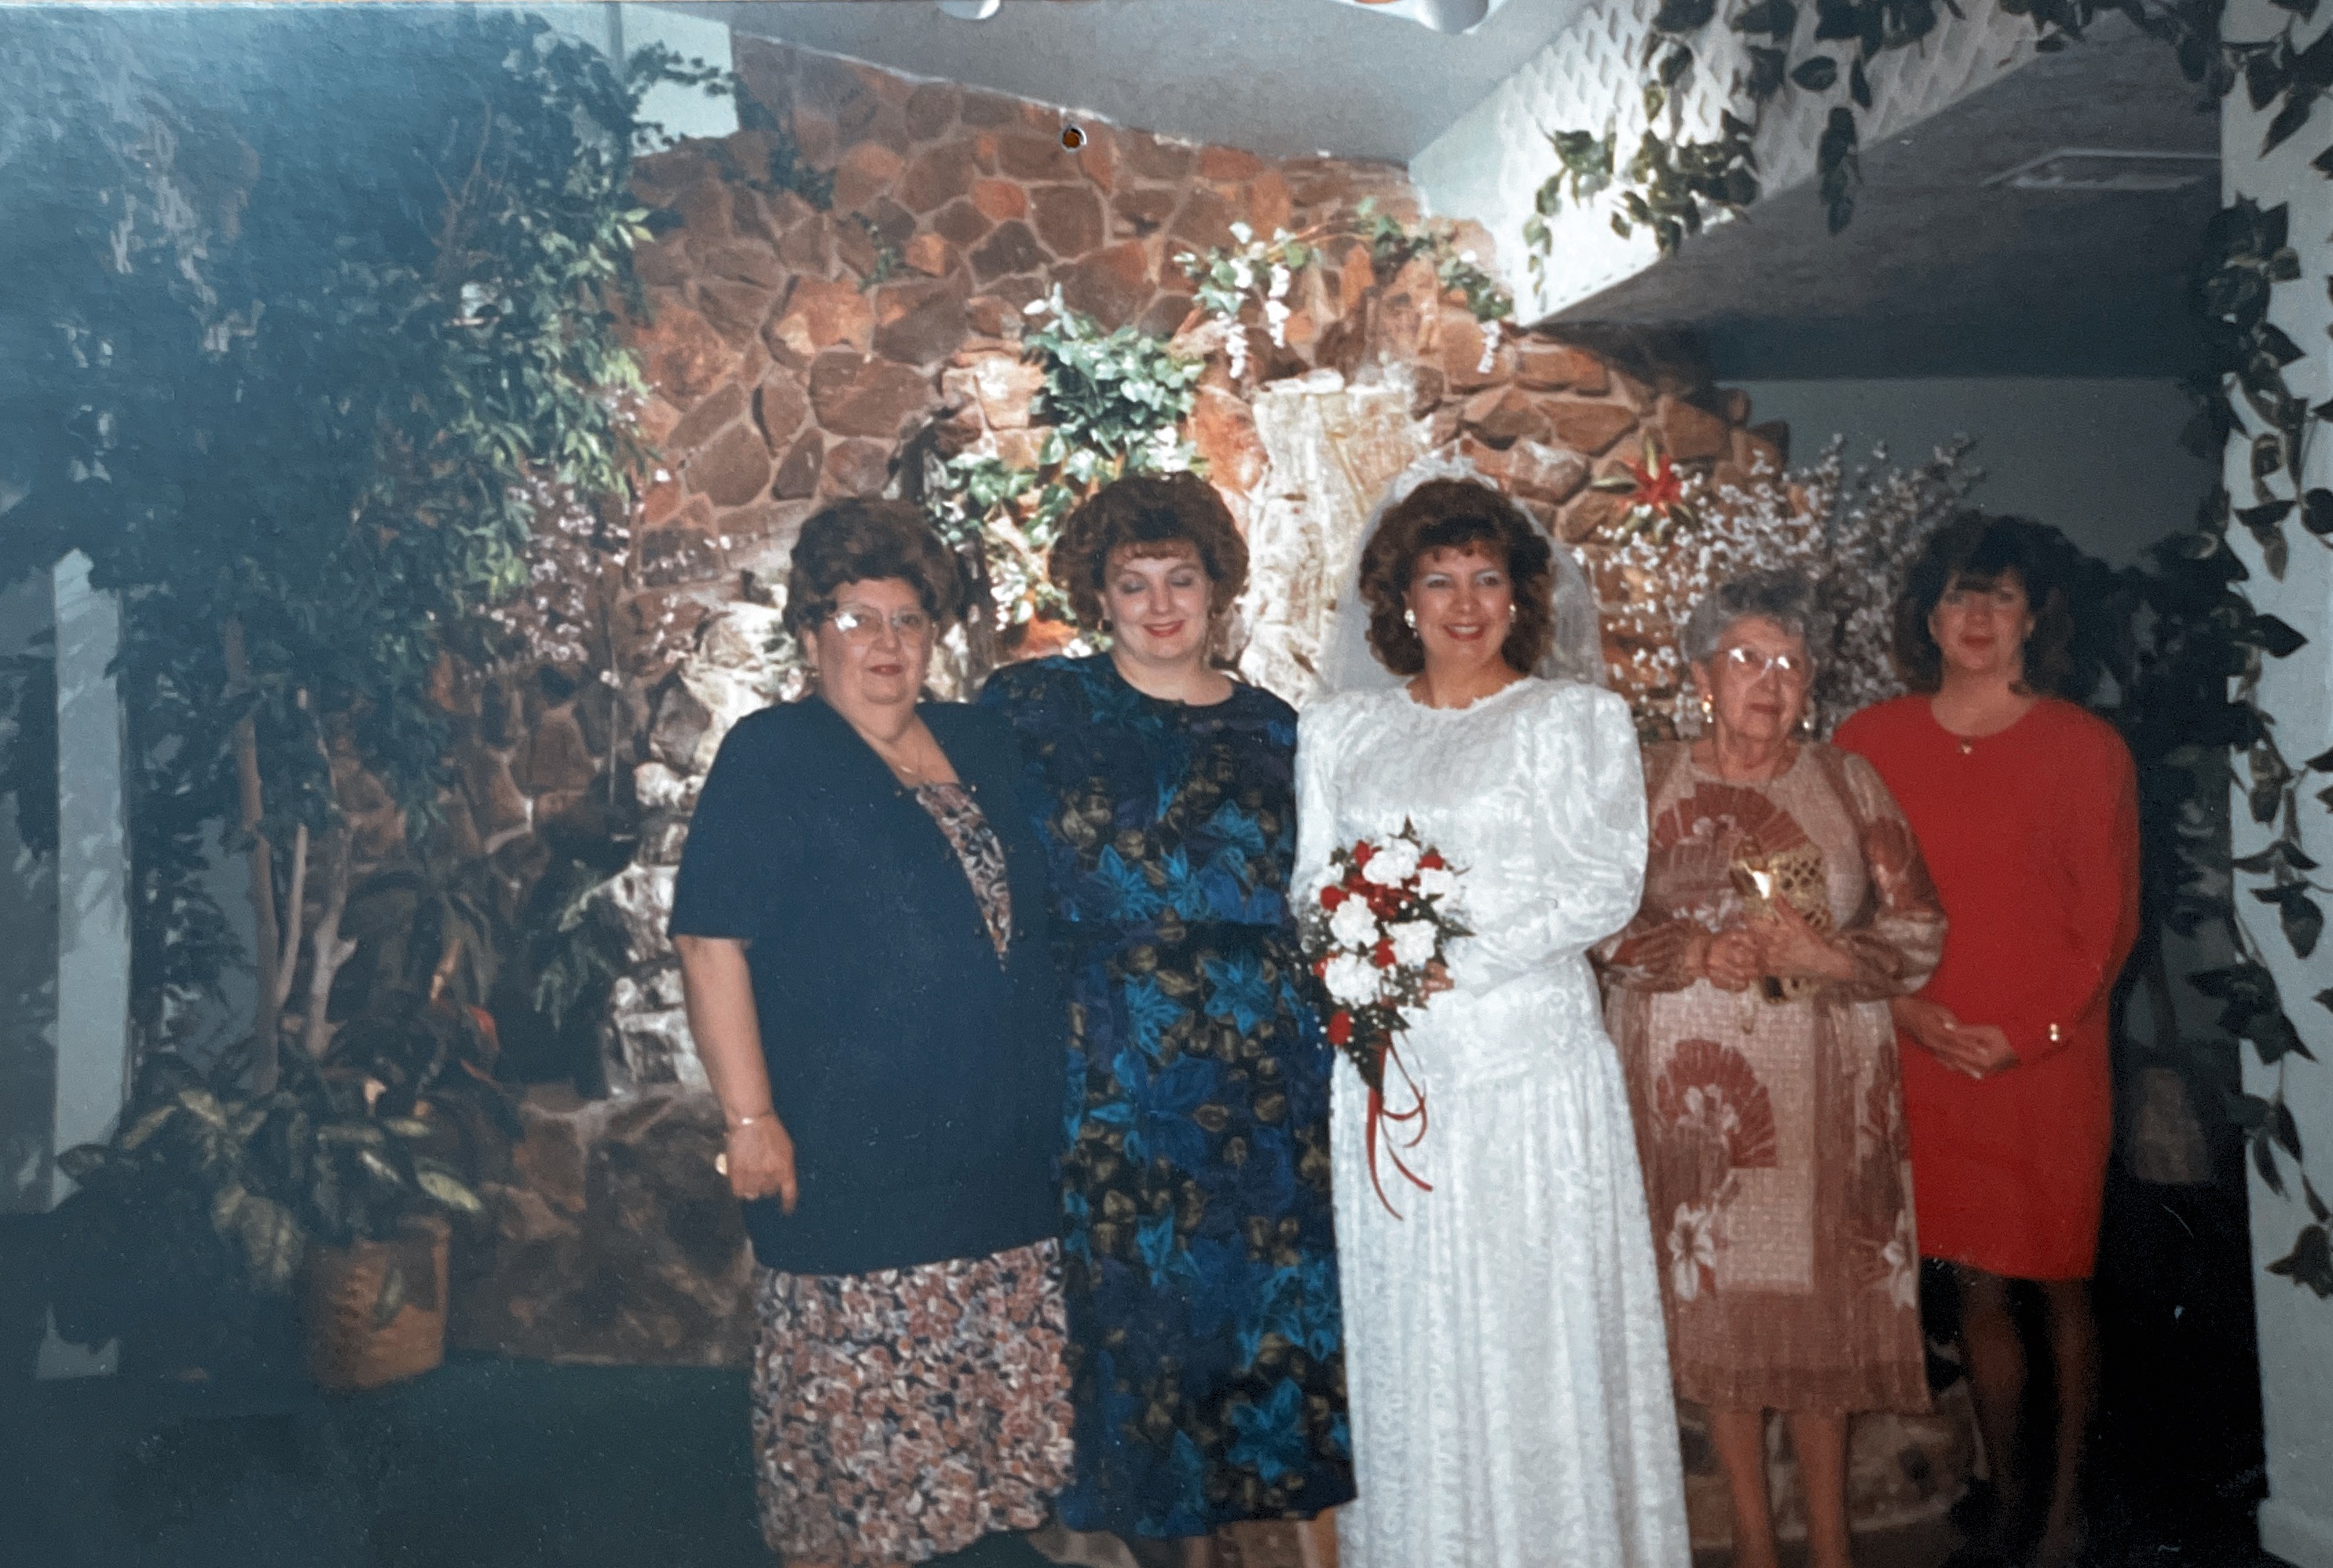 My wedding day March 25, 1994